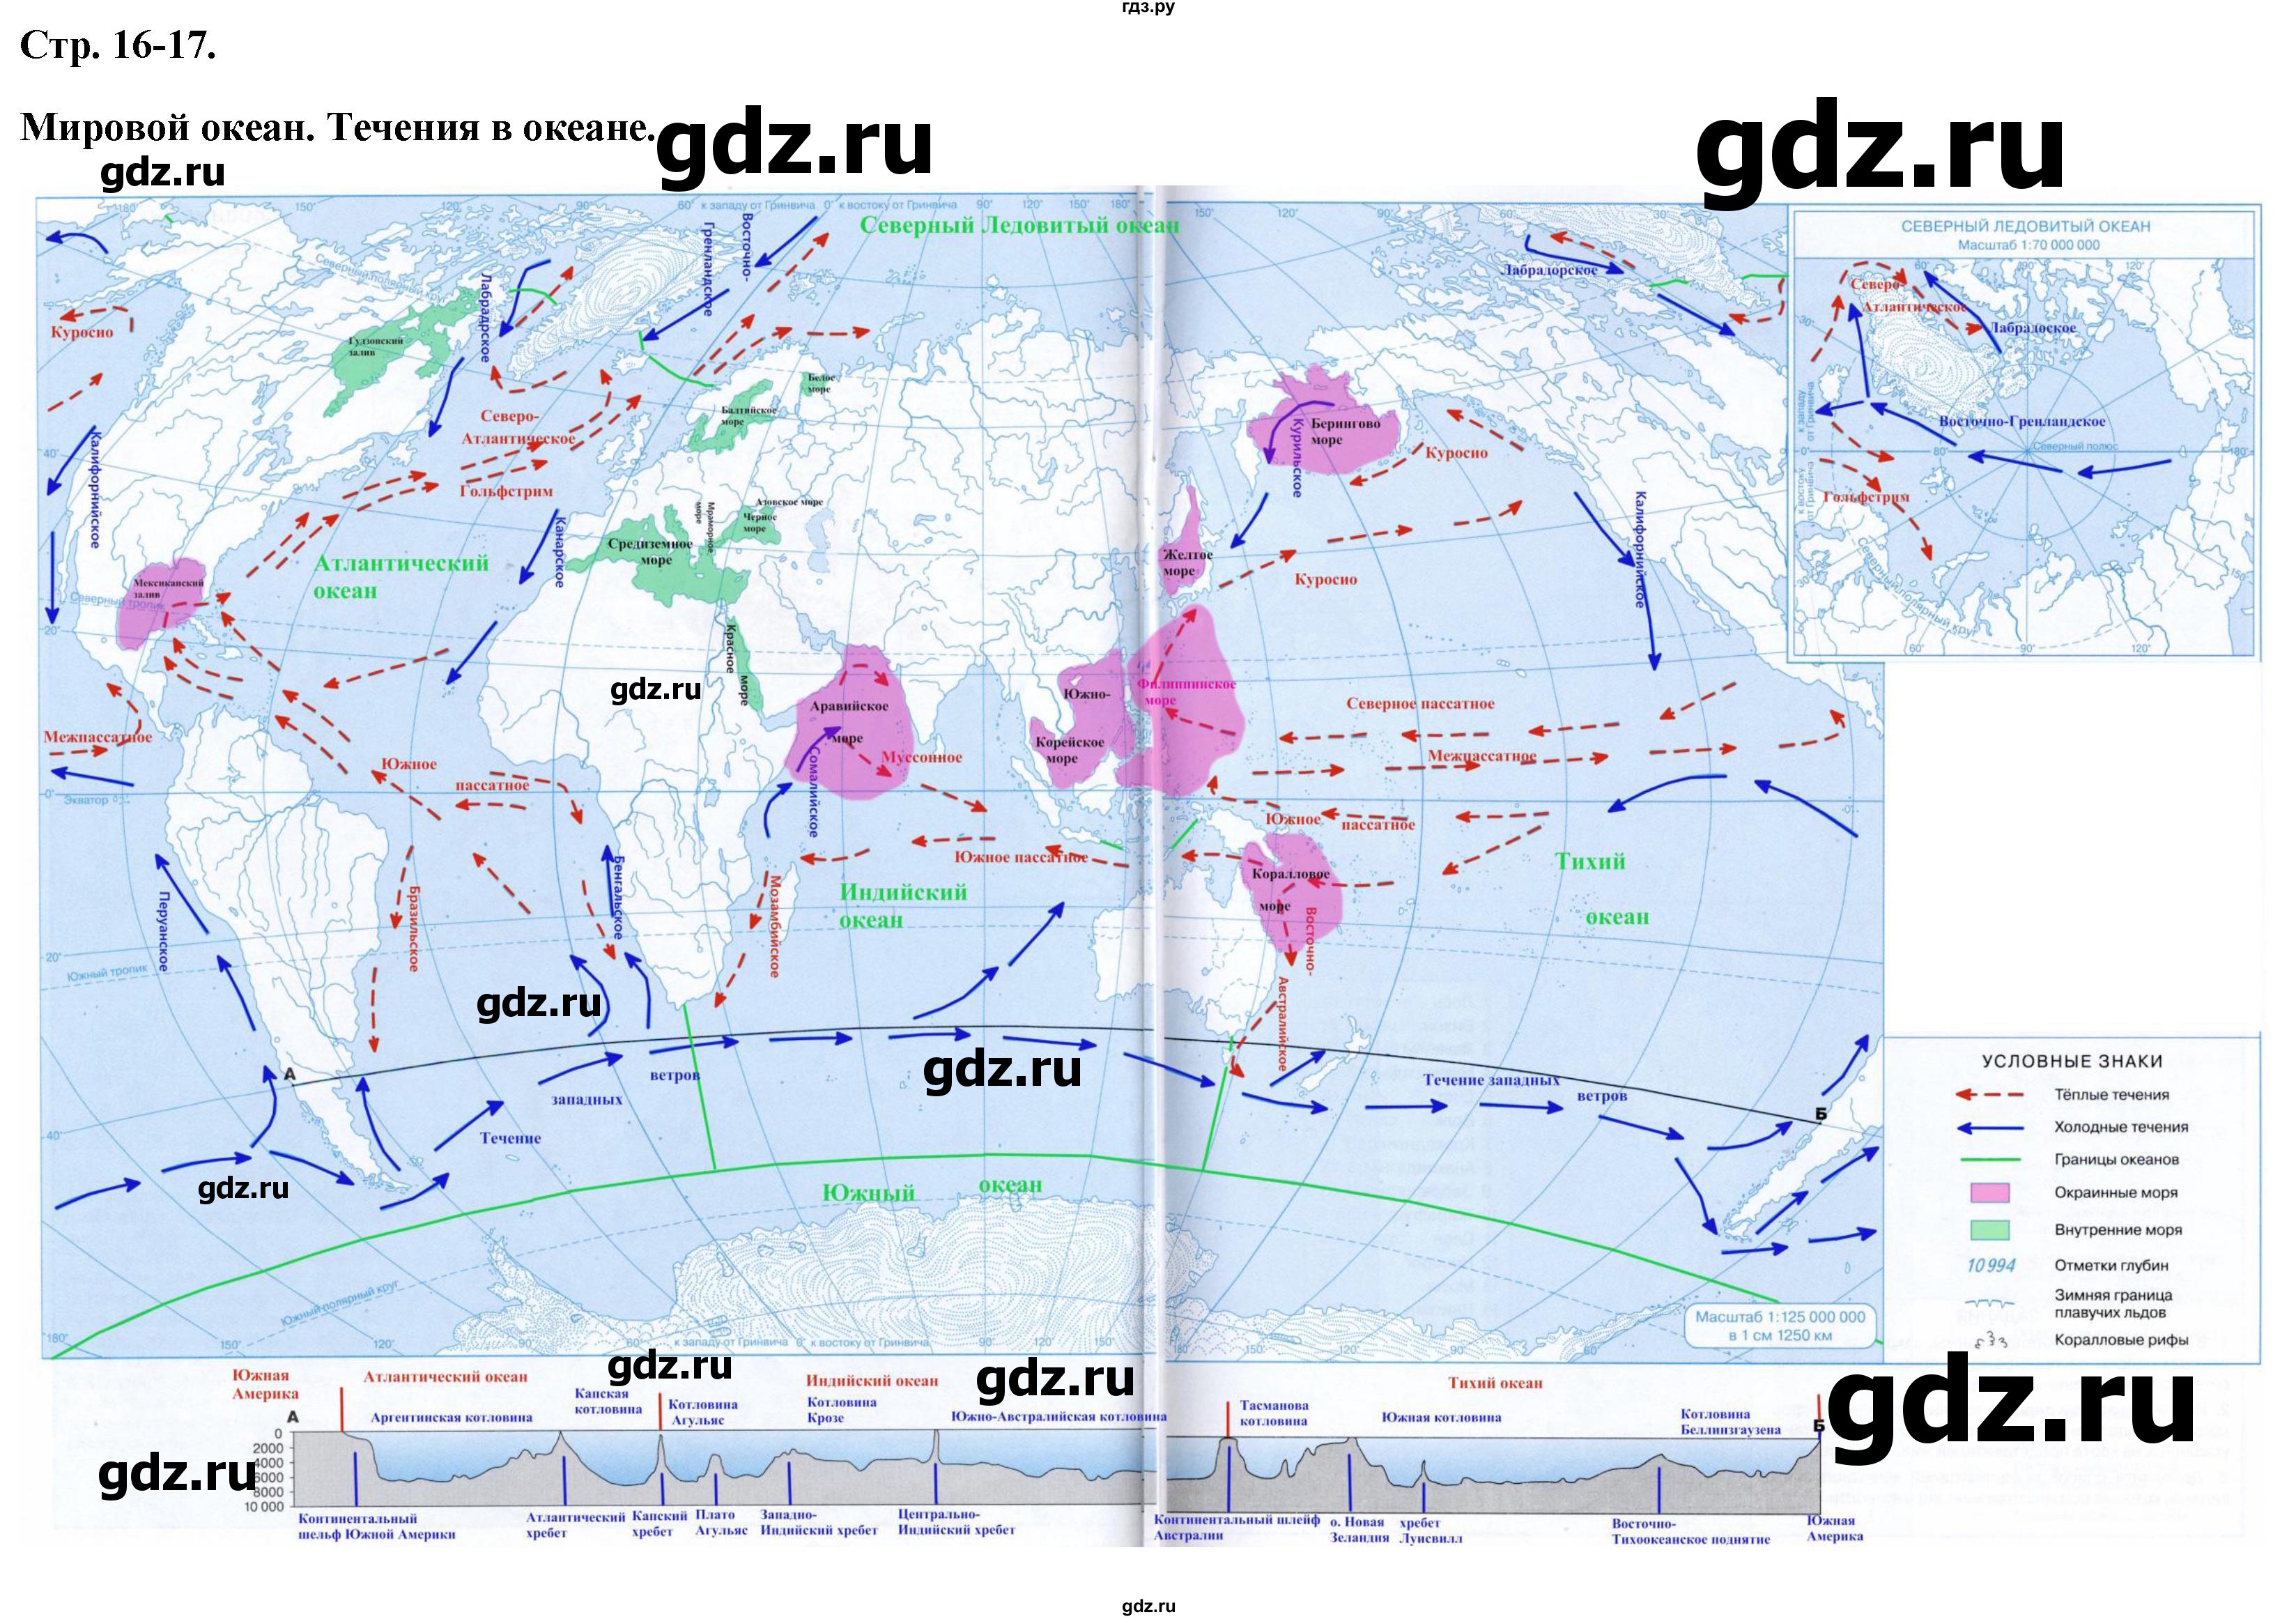 ГДЗ контурные карты стр.16-17 география 6 класс контурные карты Курбский,Курчина